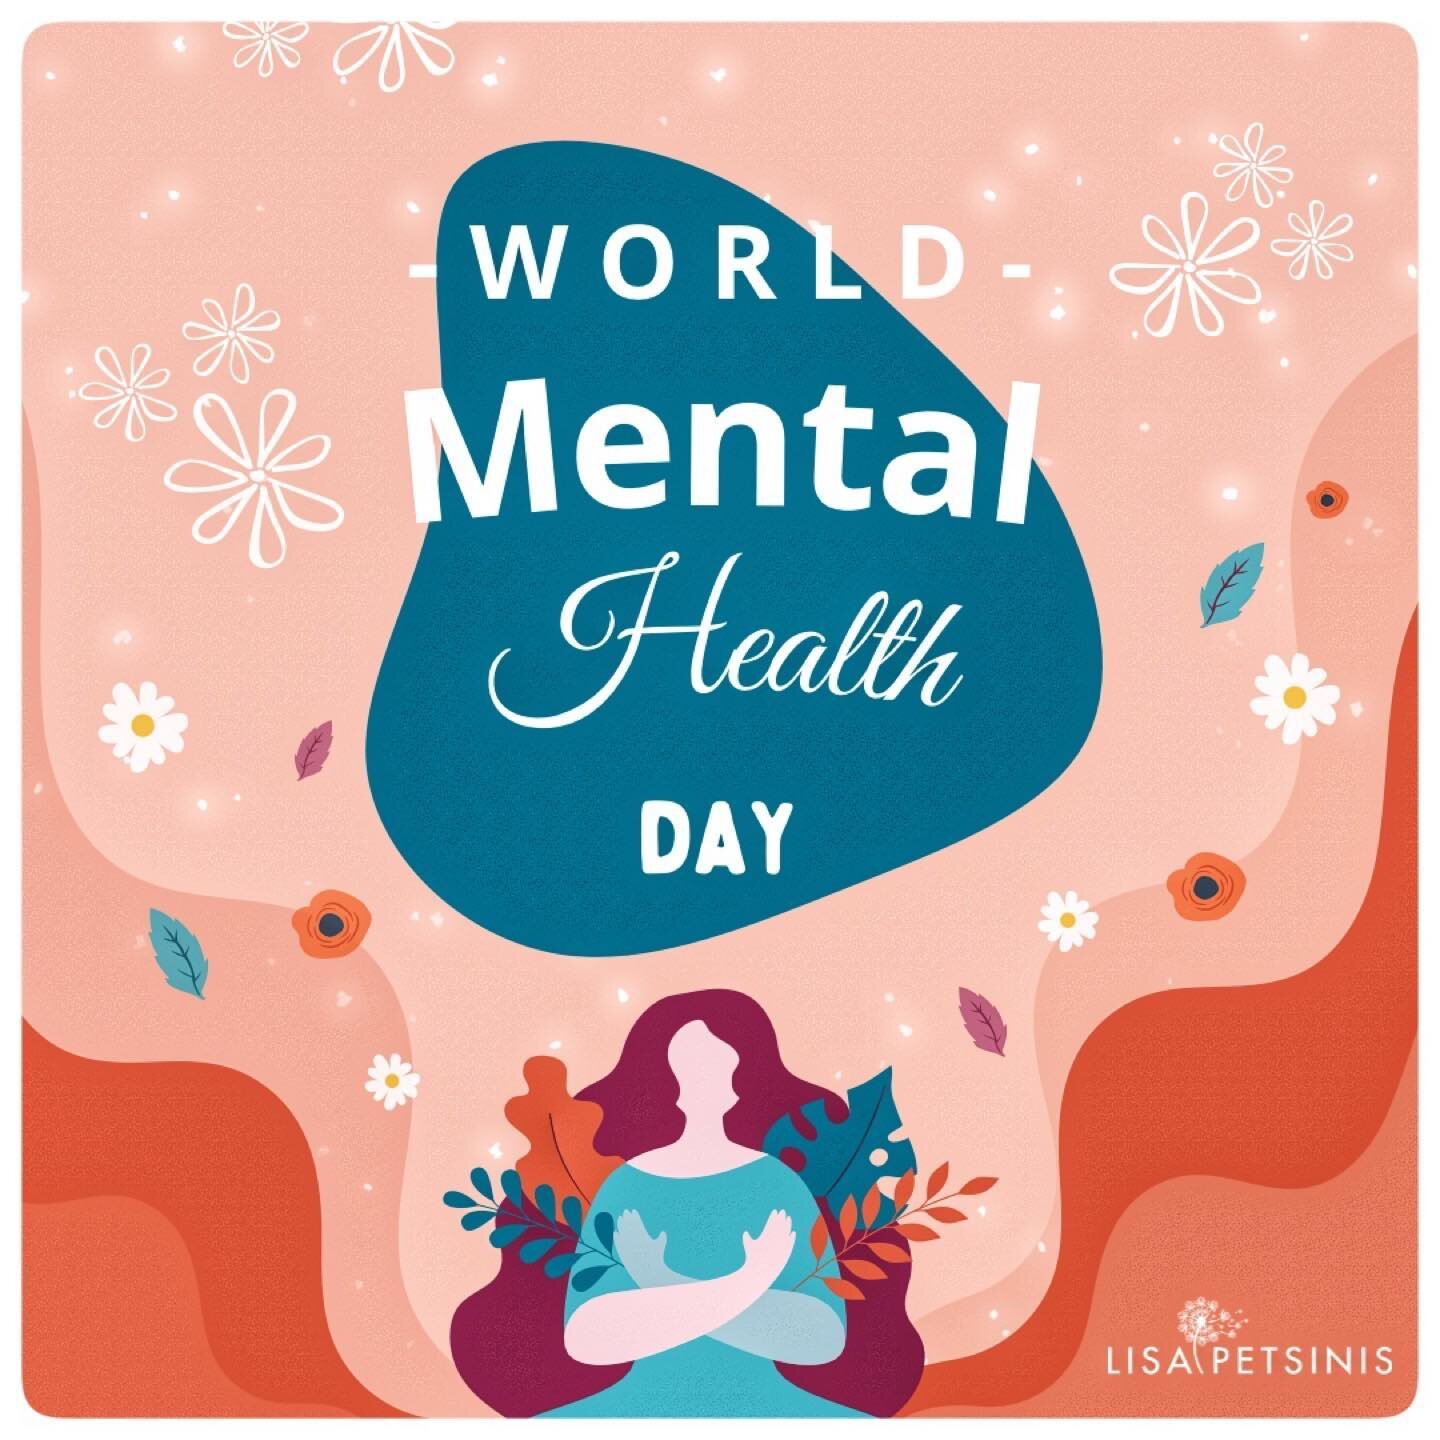 Mental health is health. Take care of it. Promote it. 

#MentalHealthMatters
#WorldMentalHealthDay